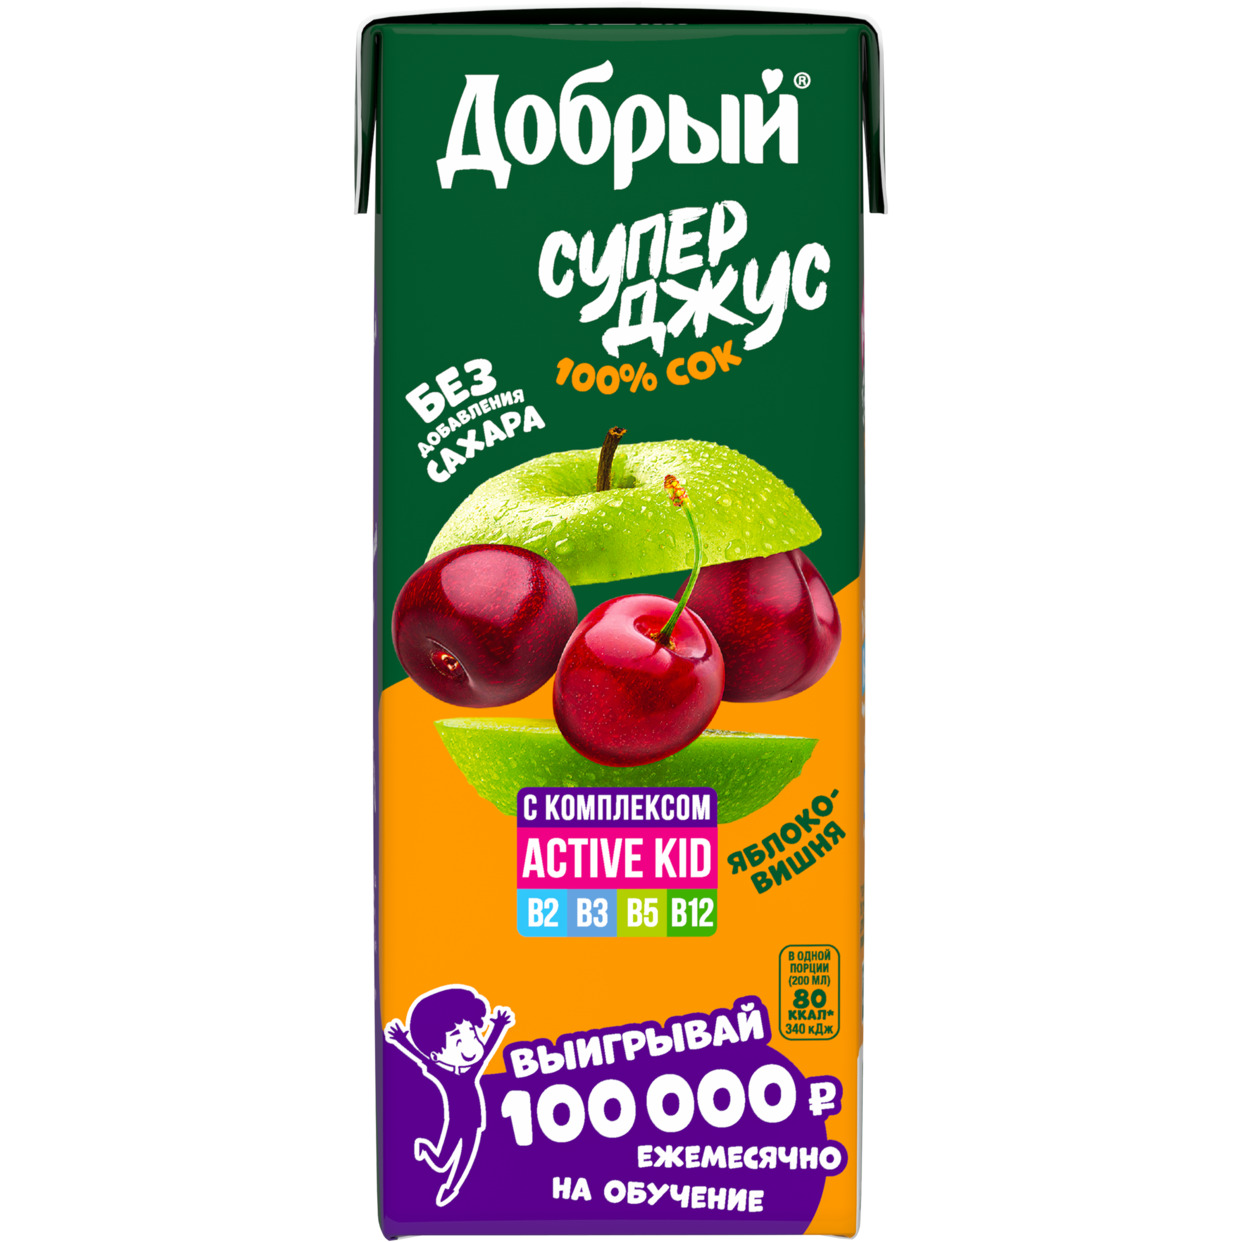 Добрый Сок из яблок и вишни, обог. витам. комп. "Active kid" 0.2л по акции в Пятерочке